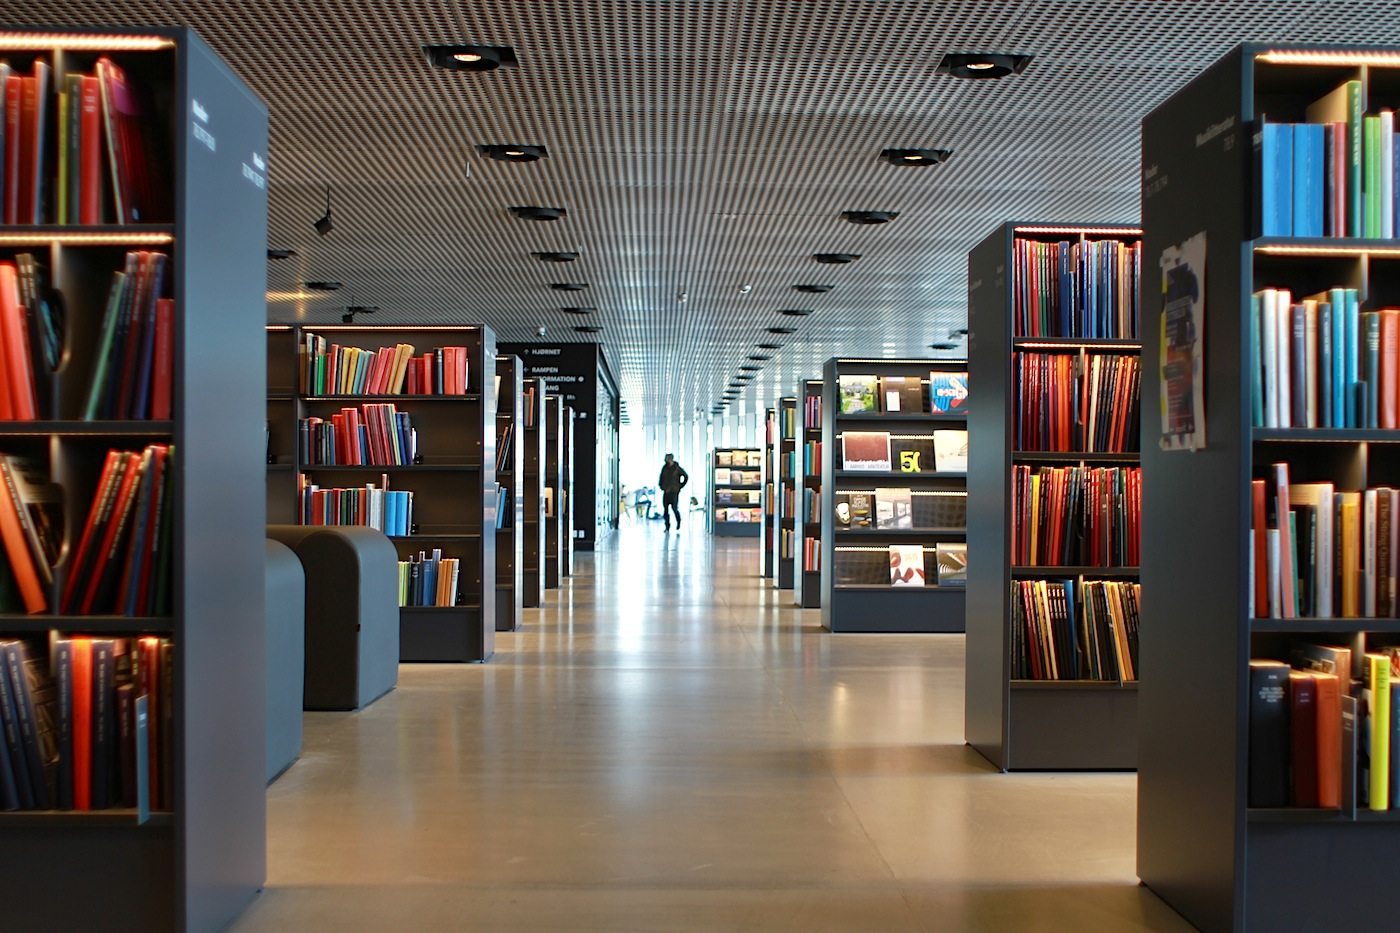 Das Dokk1 ist unter anderem Bürgeramt, Bürogebäude und beherbergt die größte Bibliothek Skandinaviens.